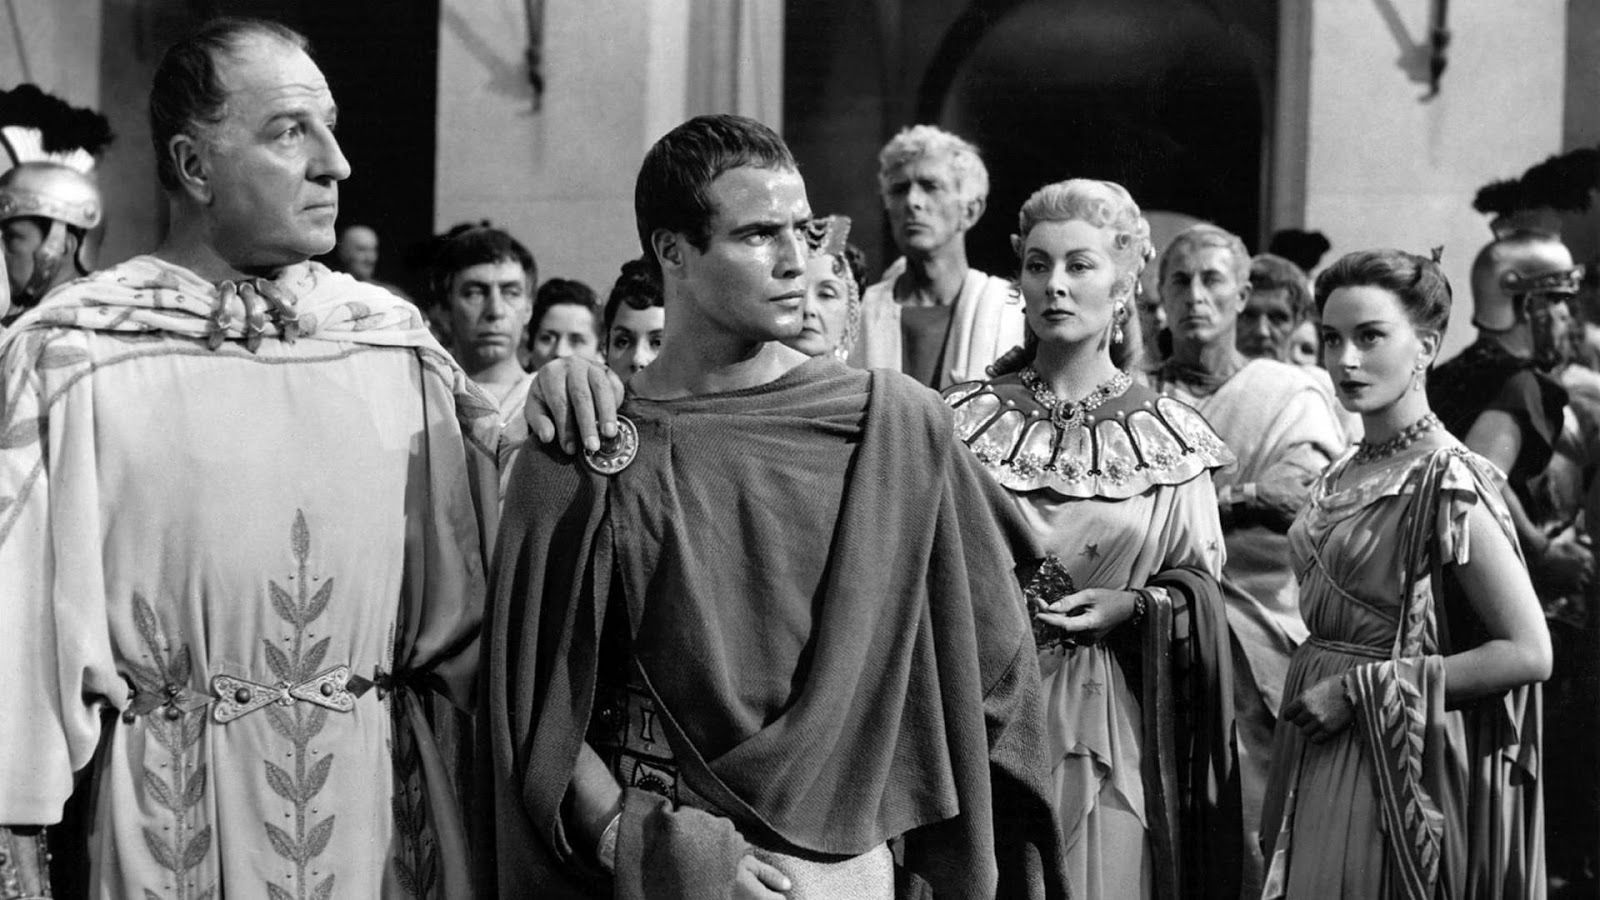 Брандо във филма от 1953 г. "Юлий Цезар"